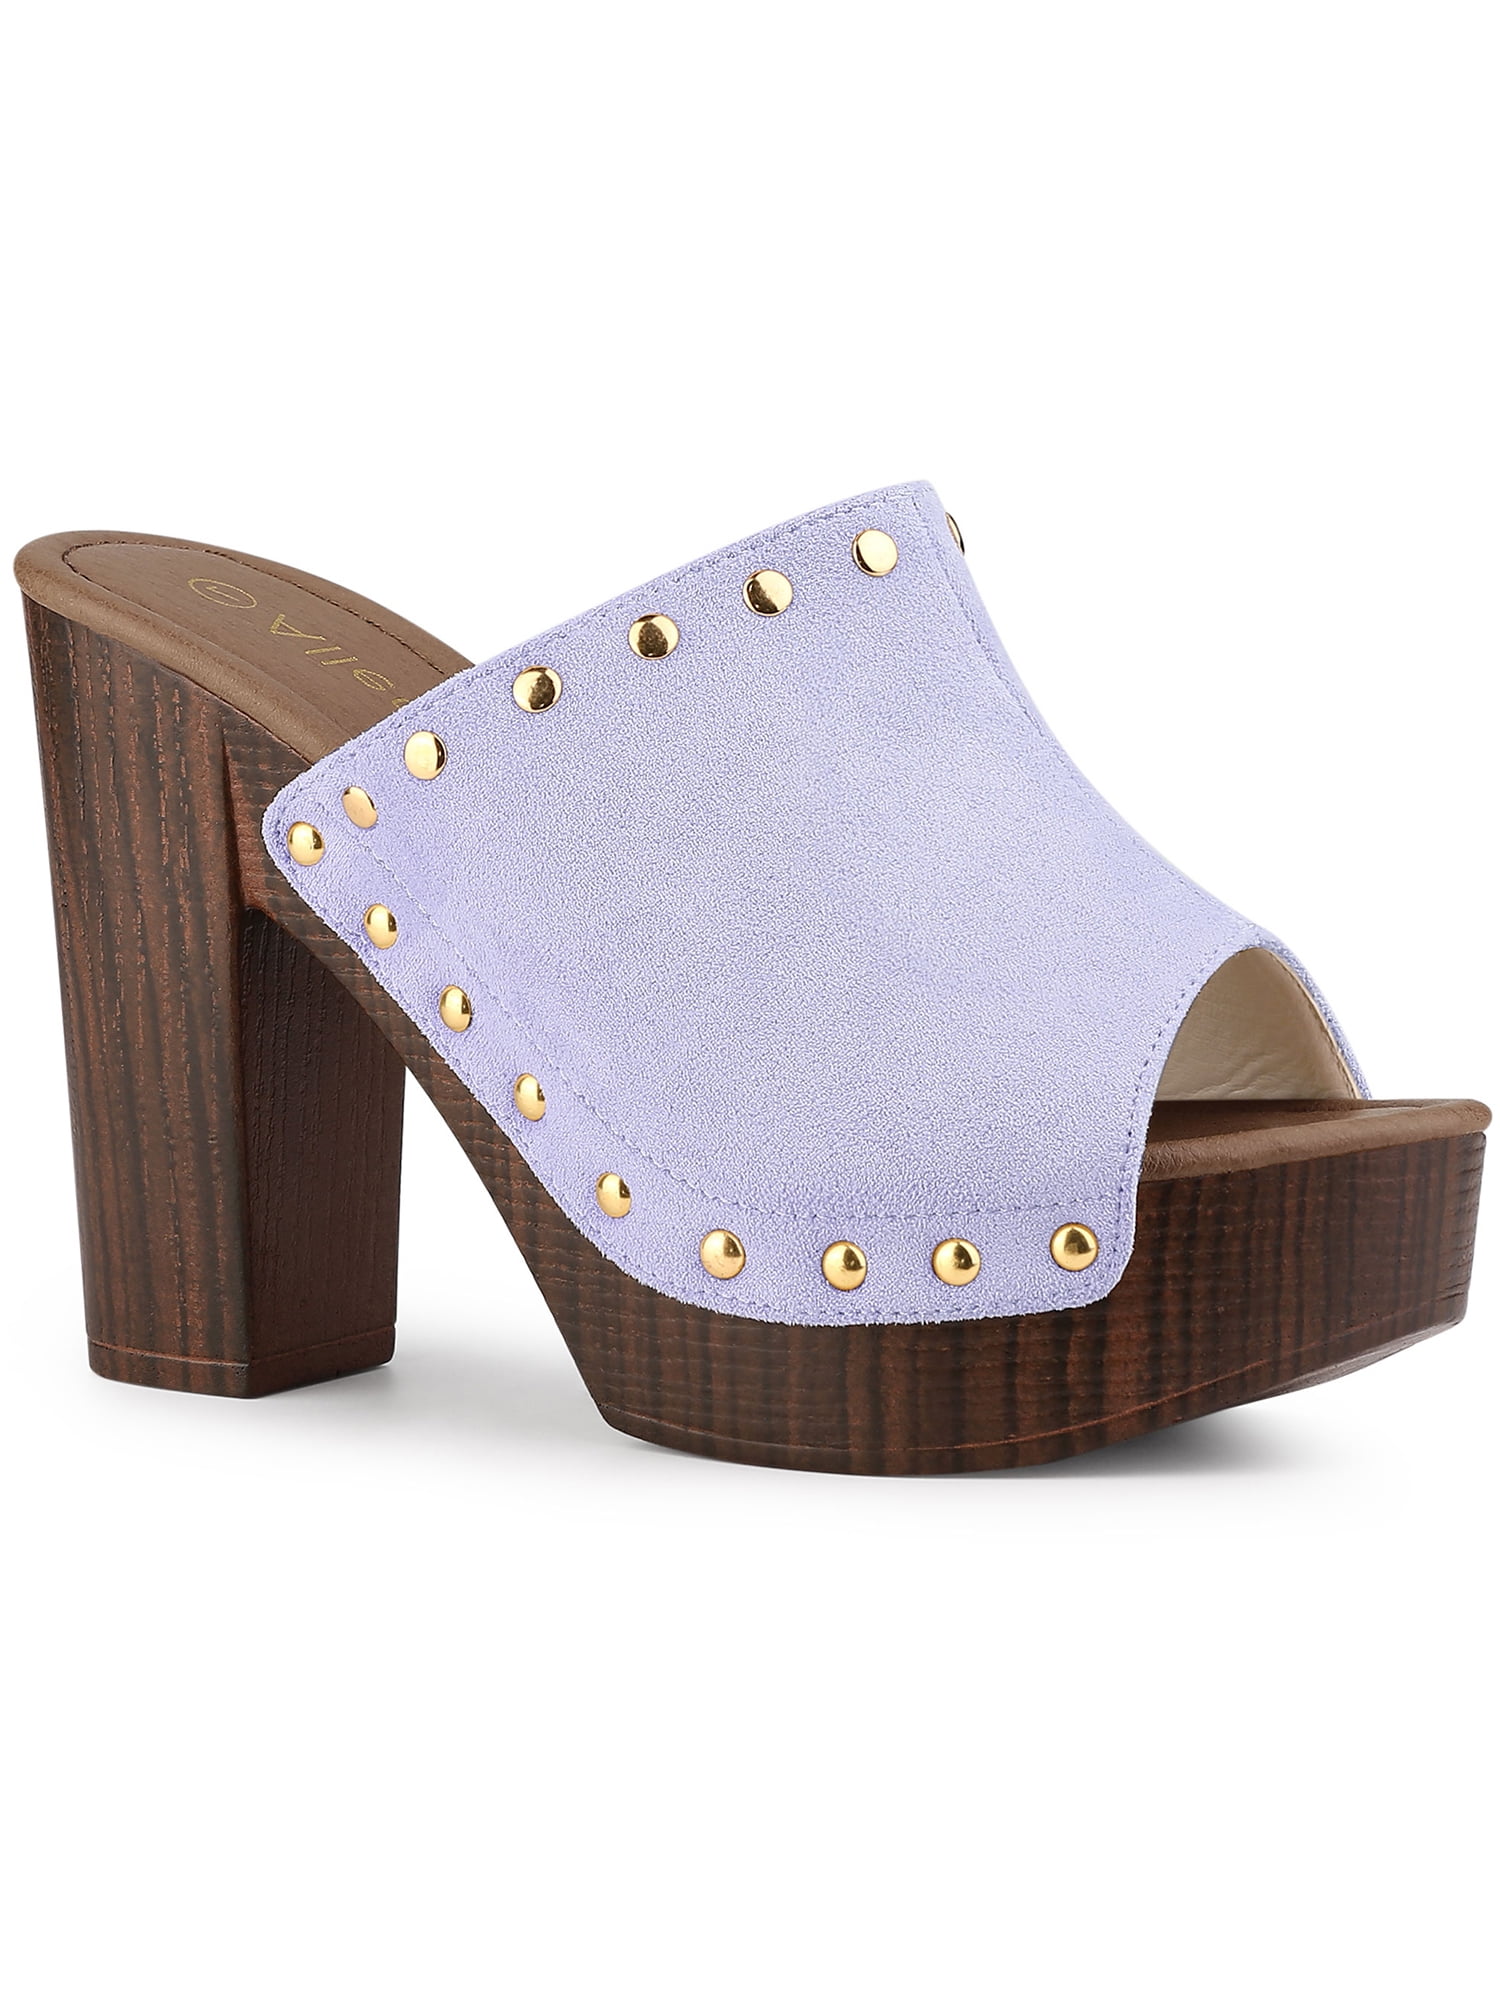 Allegra K Women's Open Toe Platform Block Heel Slides Sandals - Walmart.com